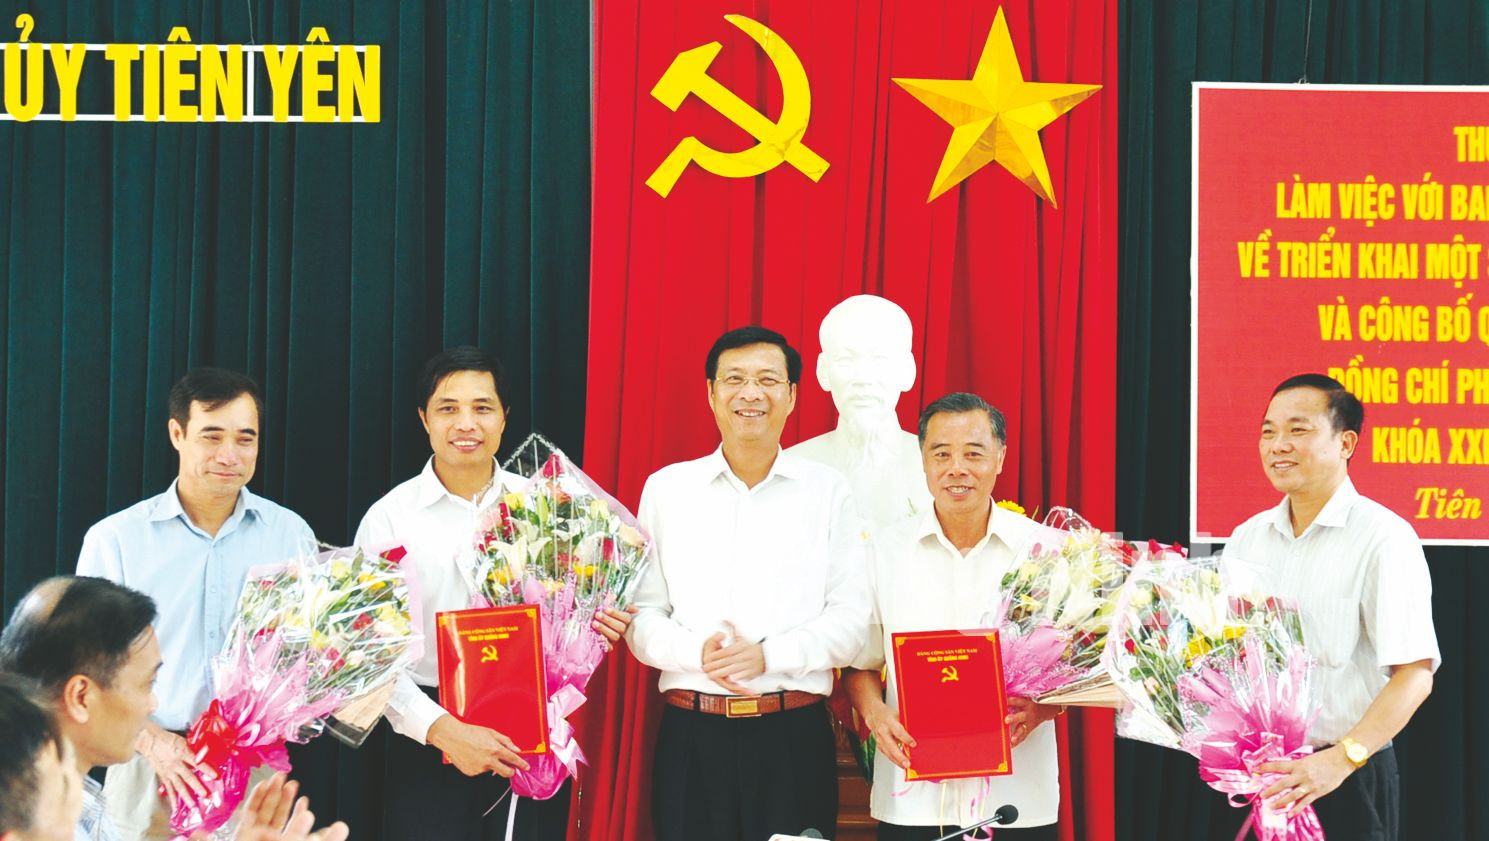 Bí thư Tỉnh ủy trao các quyết định của Ban Thường vụ Tỉnh ủy cho các đồng chí lãnh đạo huyện Tiên Yên